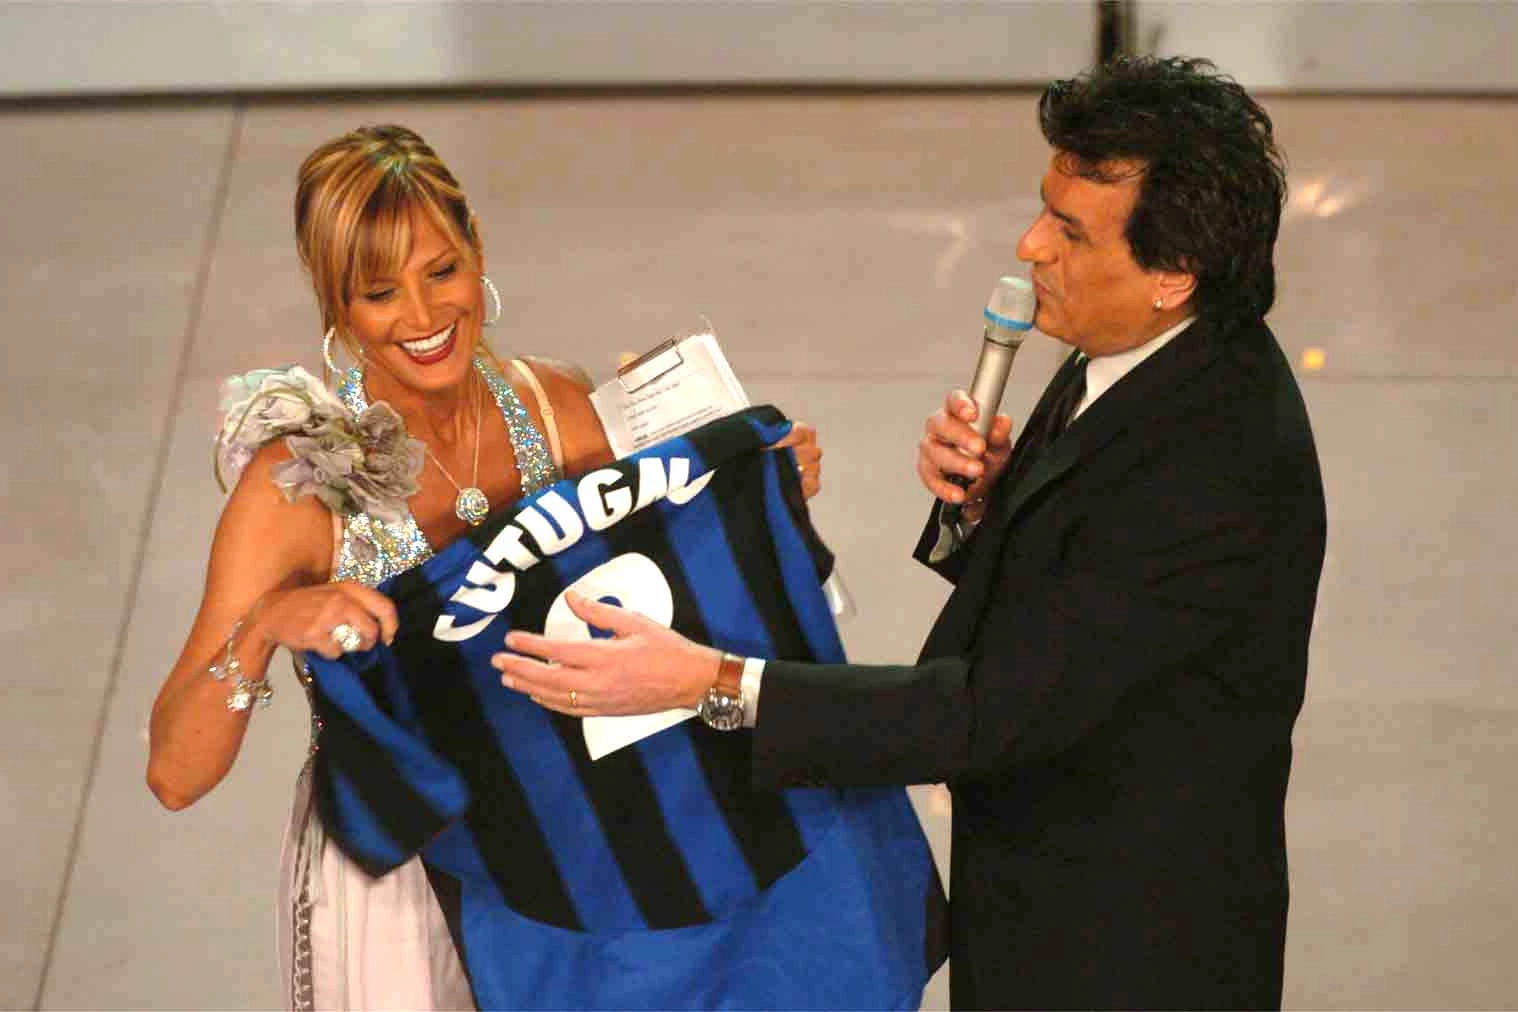 Simona Ventura regala a Cutugno una maglia con il suo nome a Sanremo